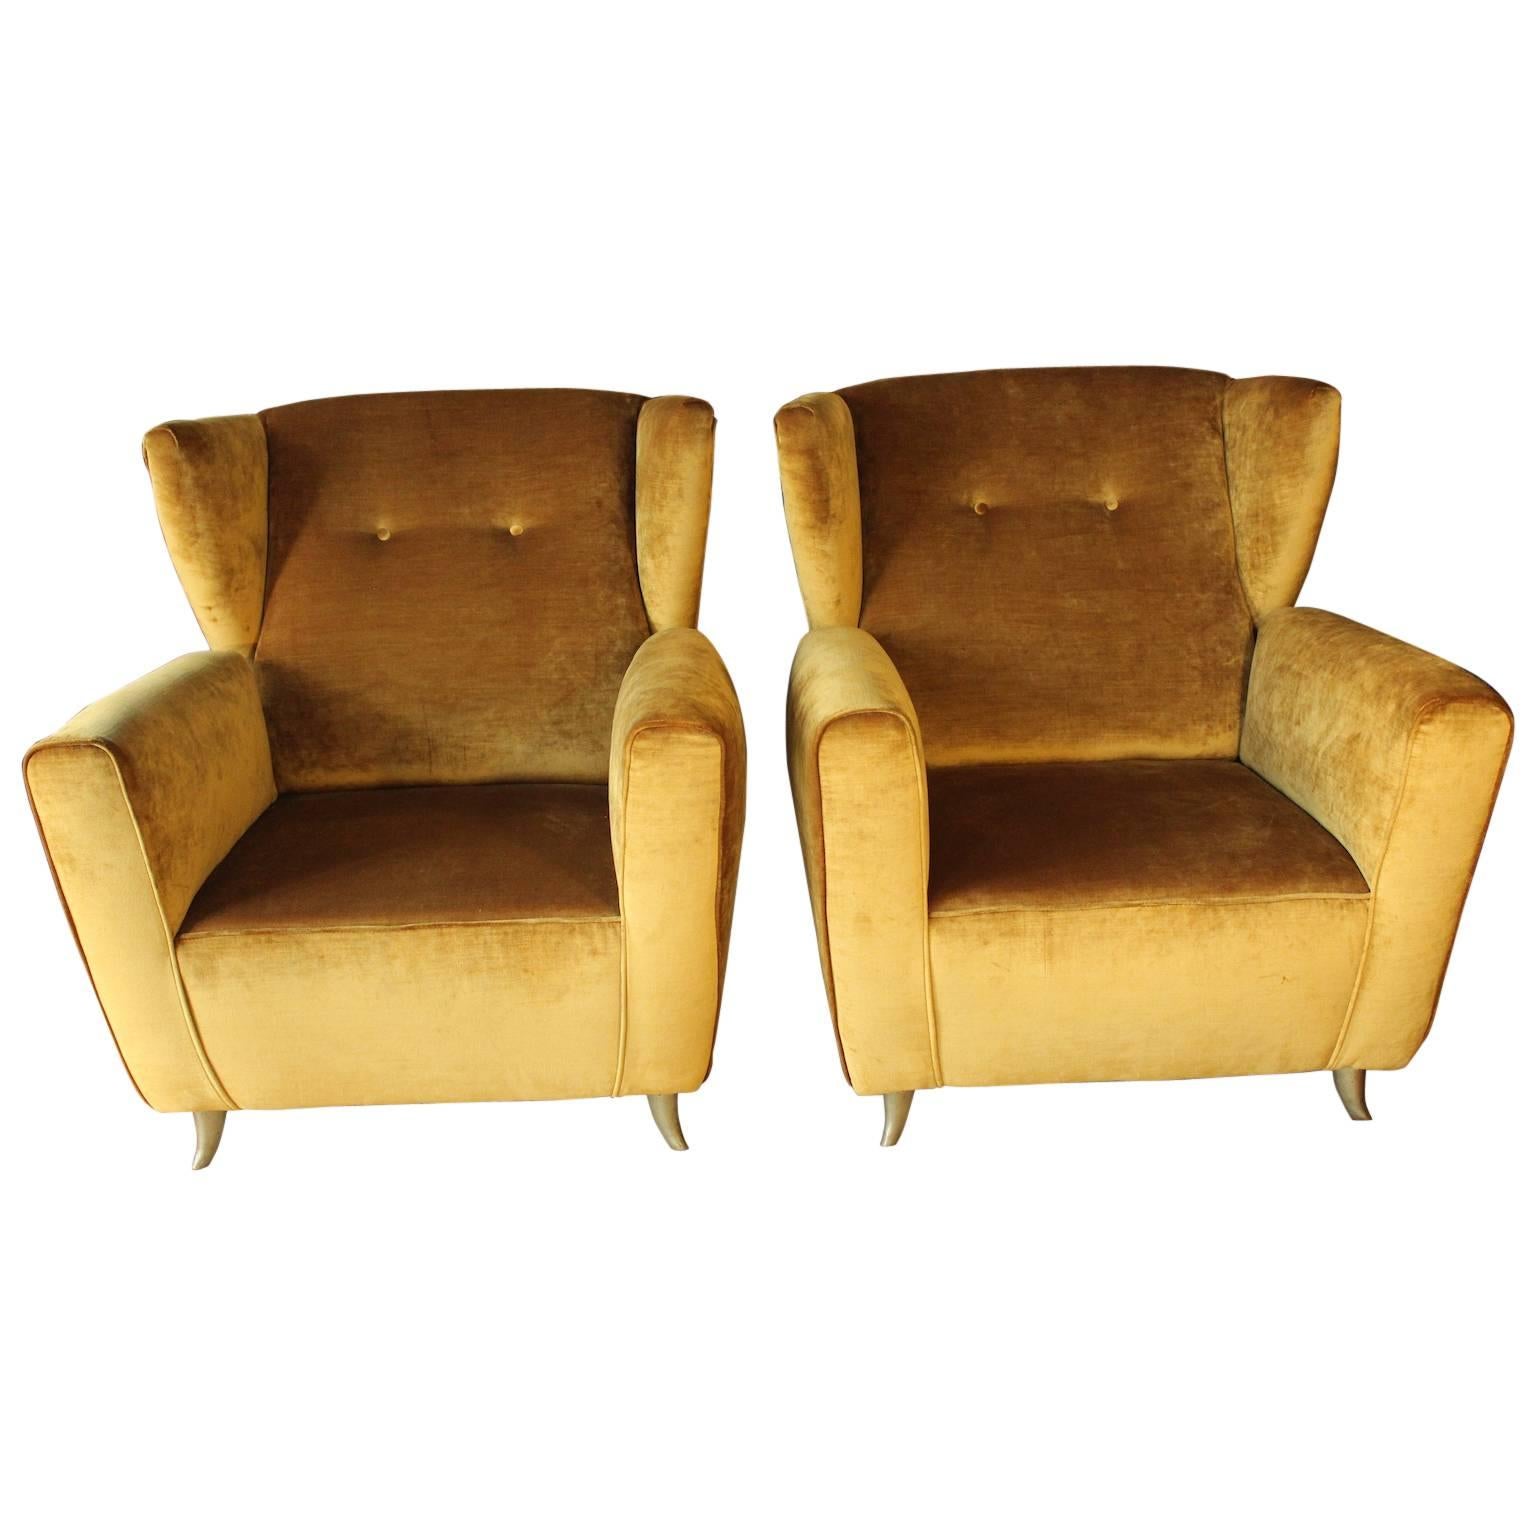 Paire de fauteuils contemporains en velours doré avec garnitures en laiton, style des années 1960